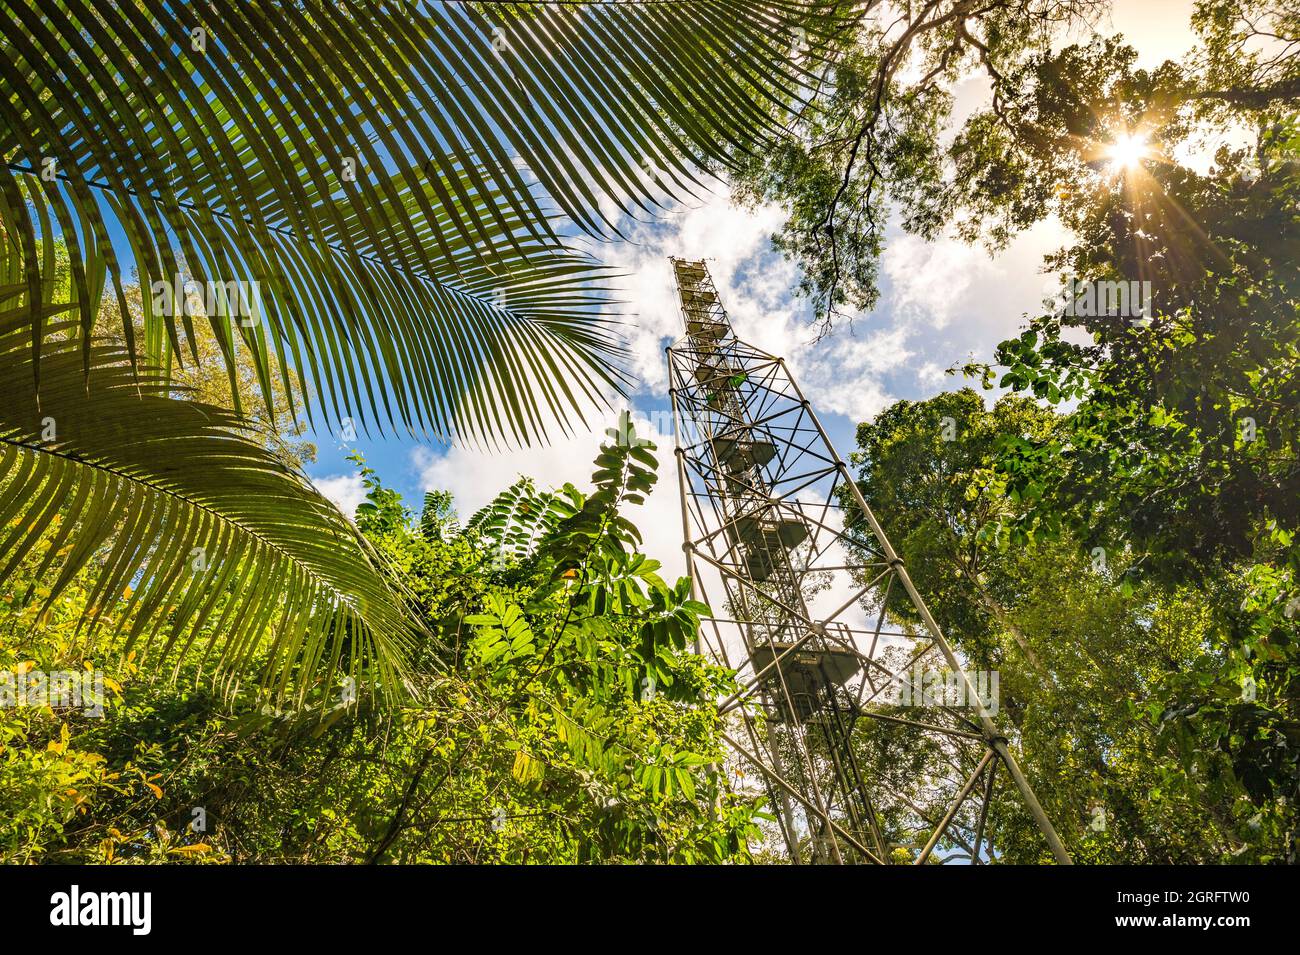 Station de recherche France, Guyane française, Kourou, Paracou (gérée par le Cirad) étudiant les échanges de gaz (cycle du carbone) entre les différentes couches de la forêt tropicale, la tour de Guyaflux Banque D'Images